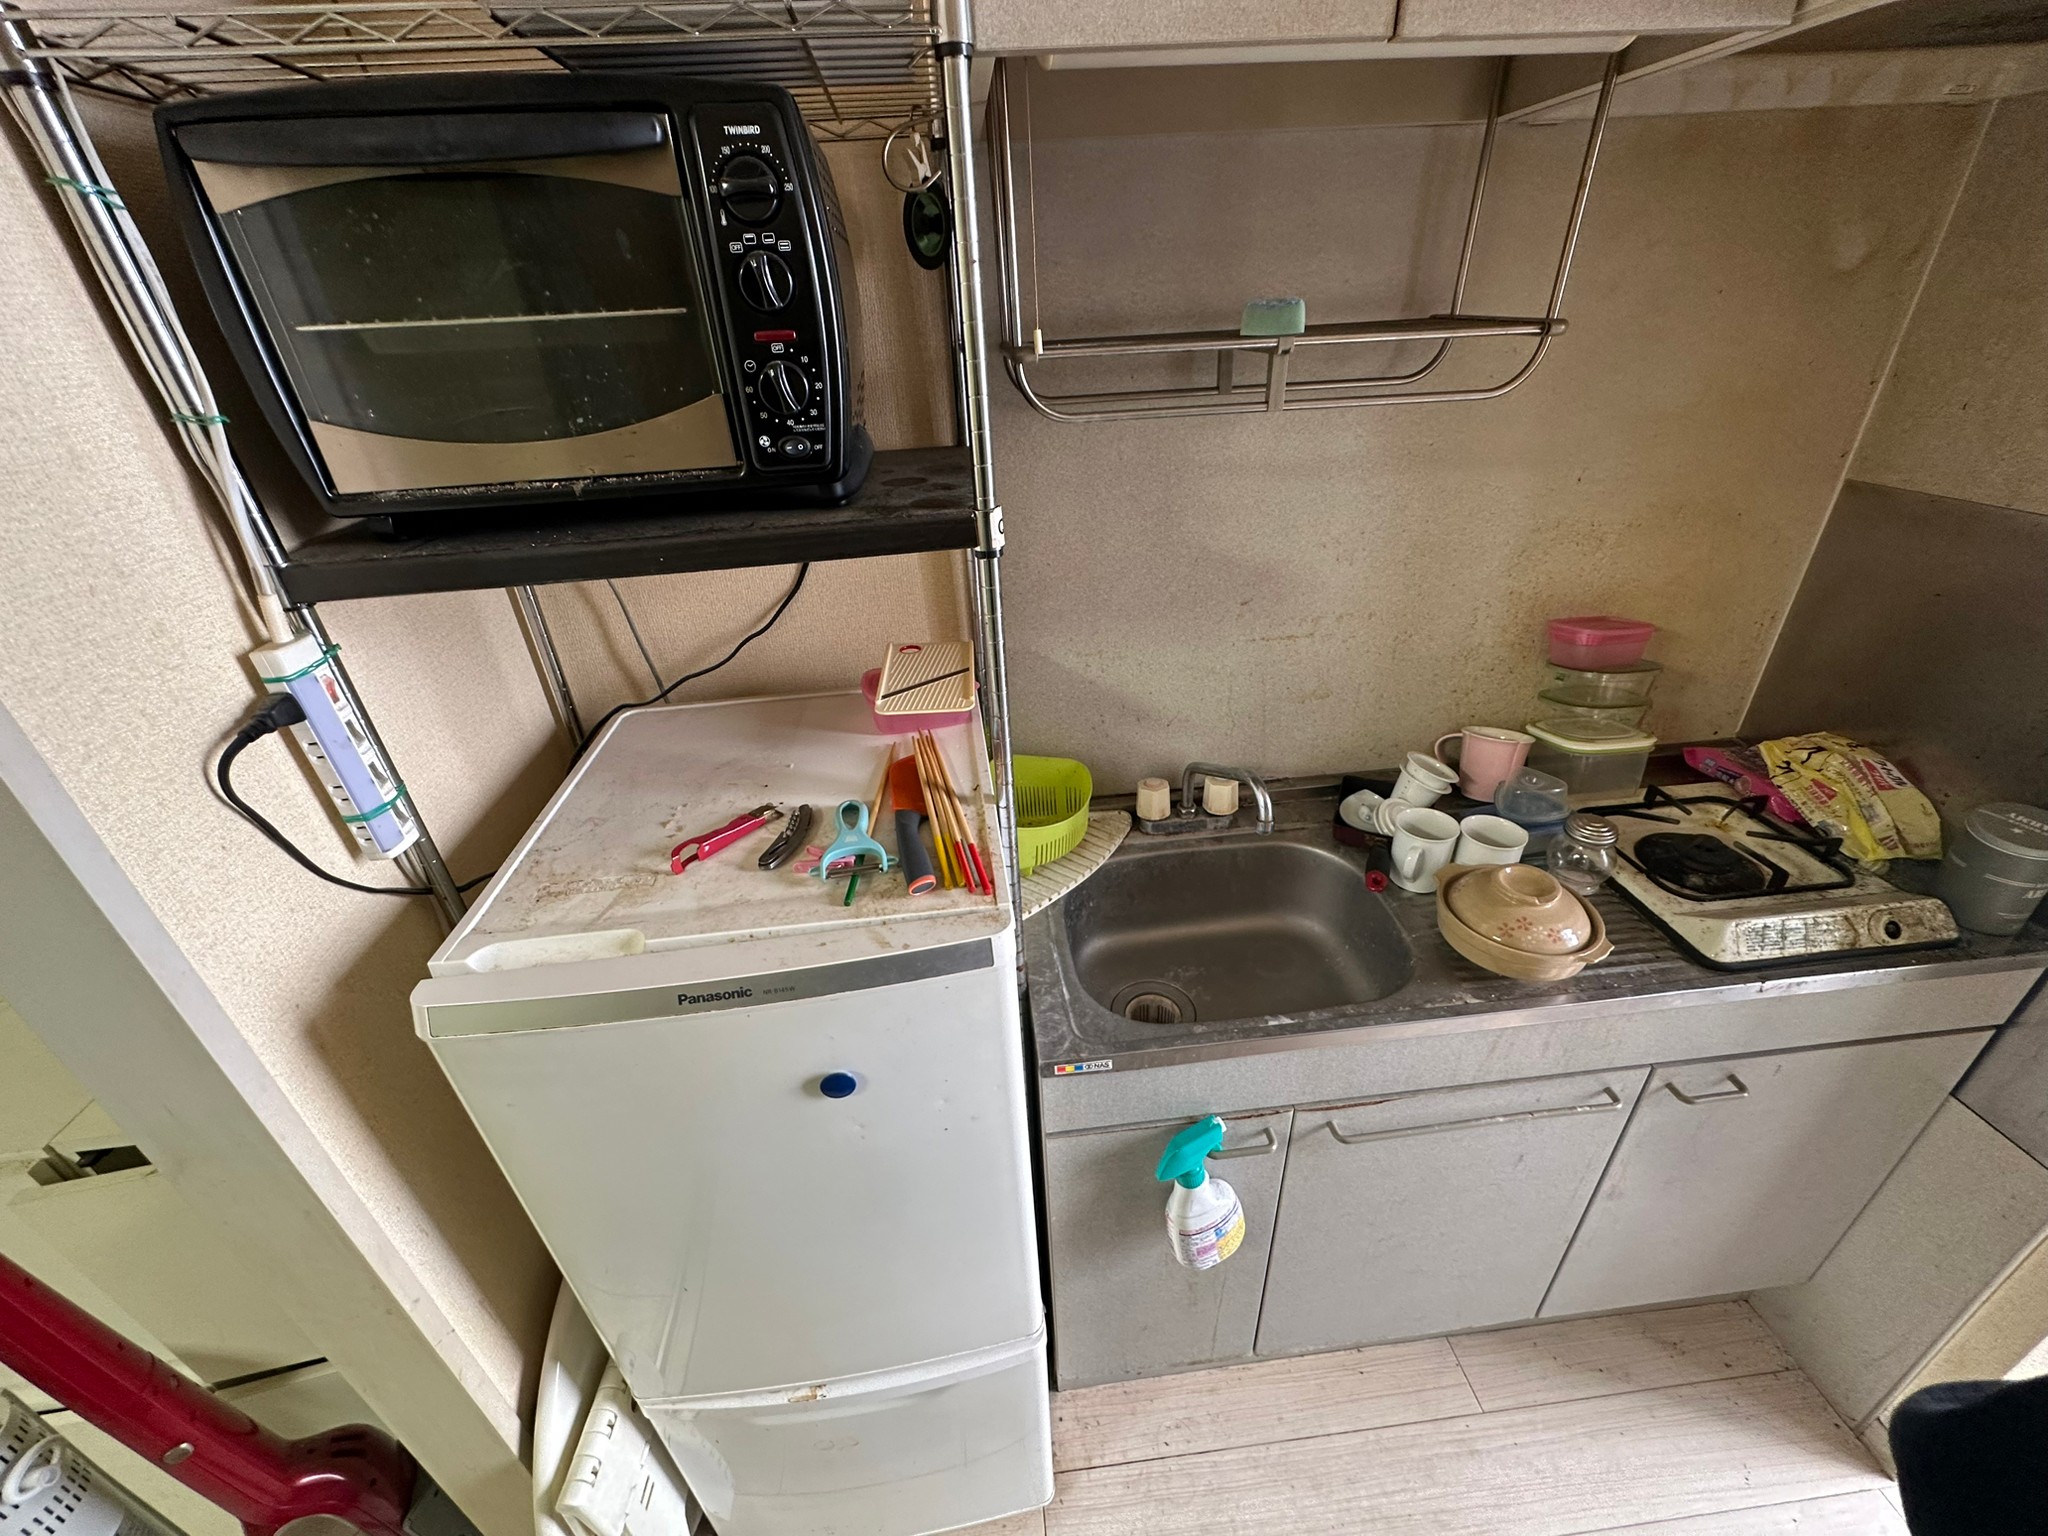 冷蔵庫、棚、電子レンジ、キッチン用品全般の回収前の状態